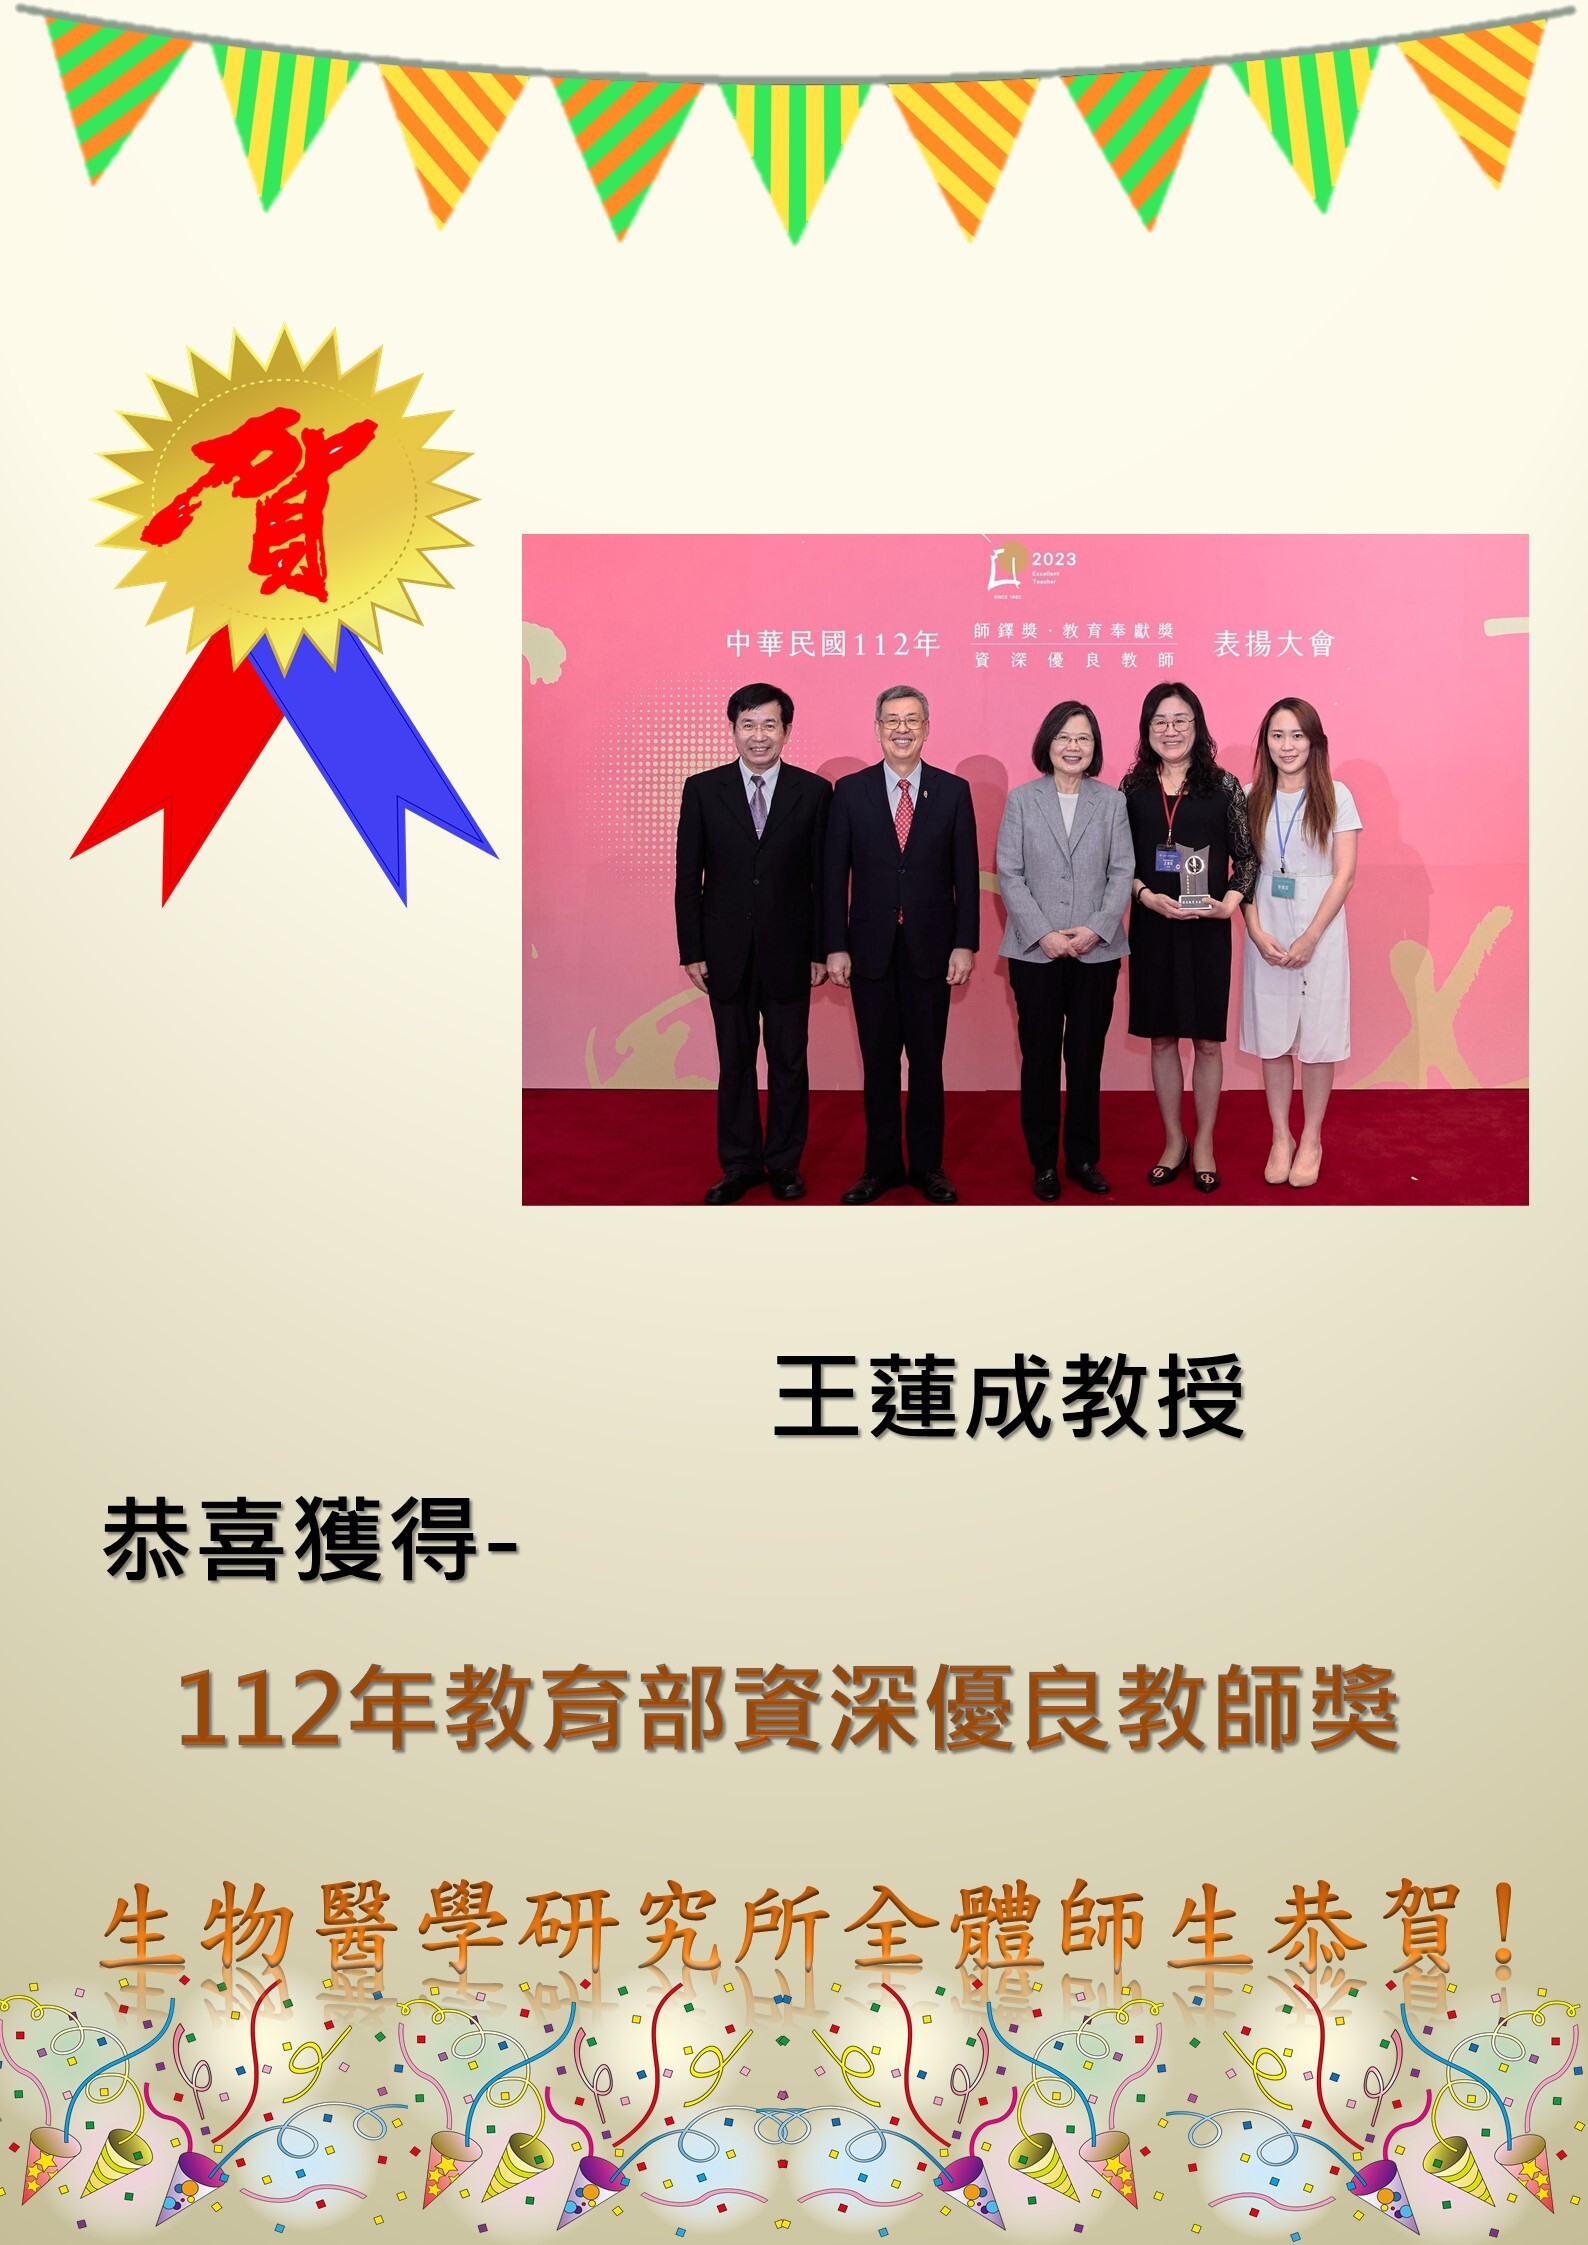 恭喜王蓮成教授獲得112年教育部資深優良教師獎